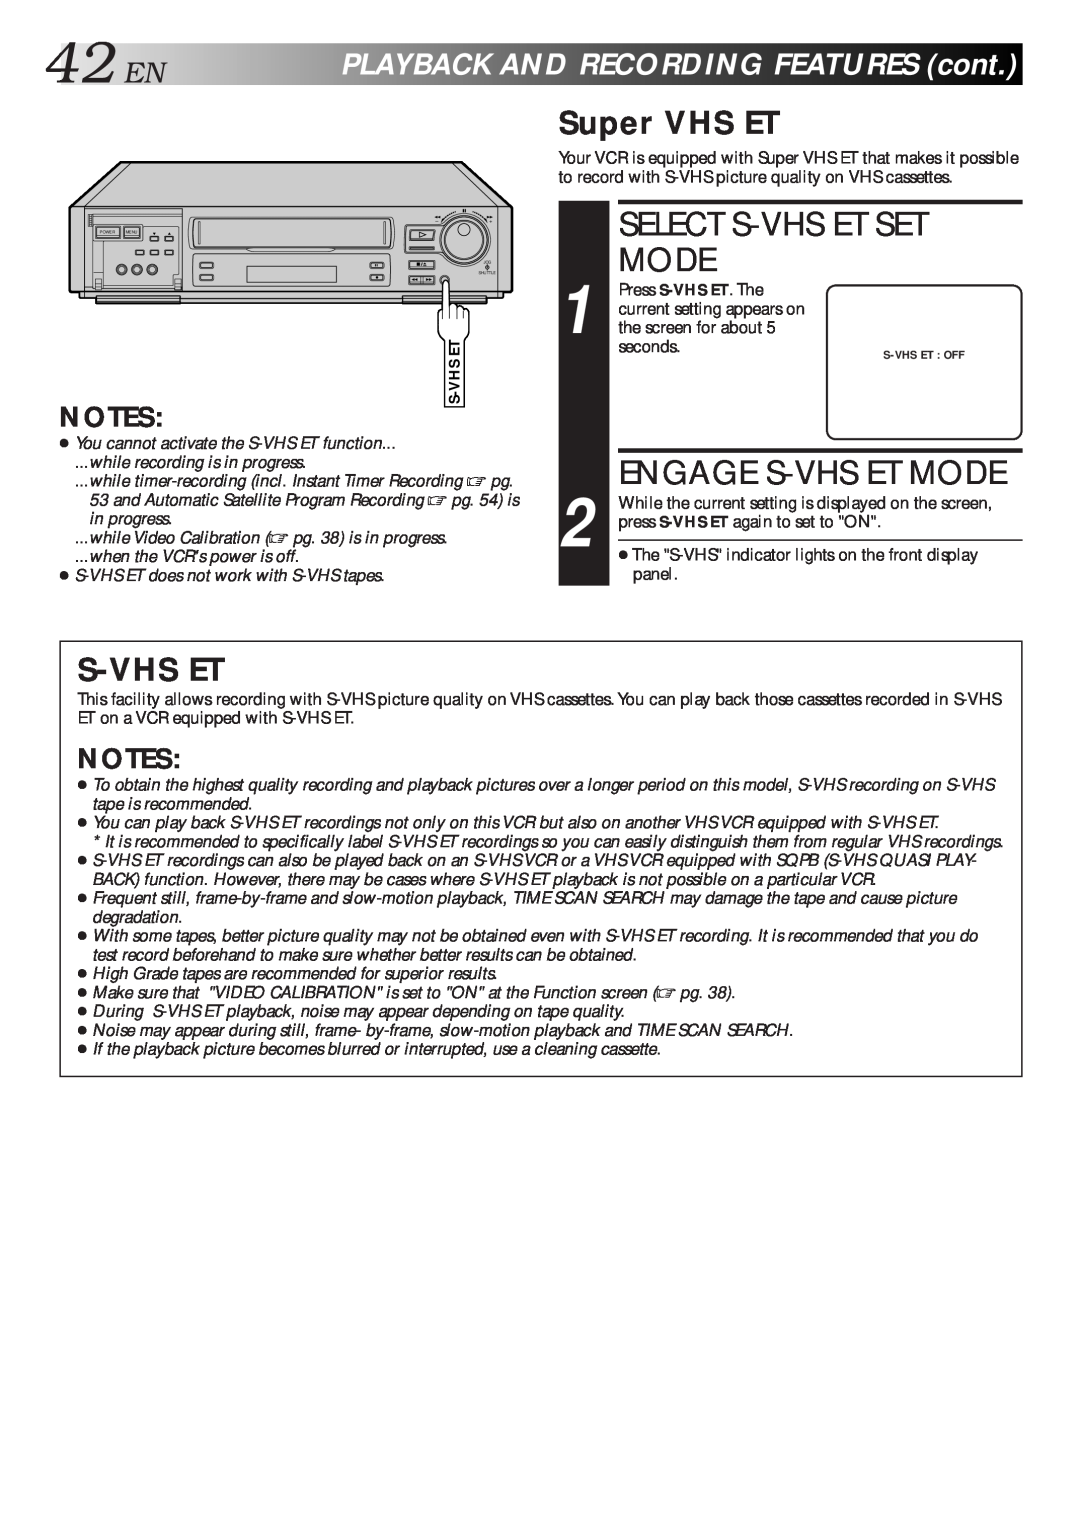 JVC HR-S7500U manual 42EN, Select S-Vhs Et Set Mode, Engage S-Vhs Et Mode, Super VHS ET, PLAYBACKANDRECORDINGFEATUREScont 